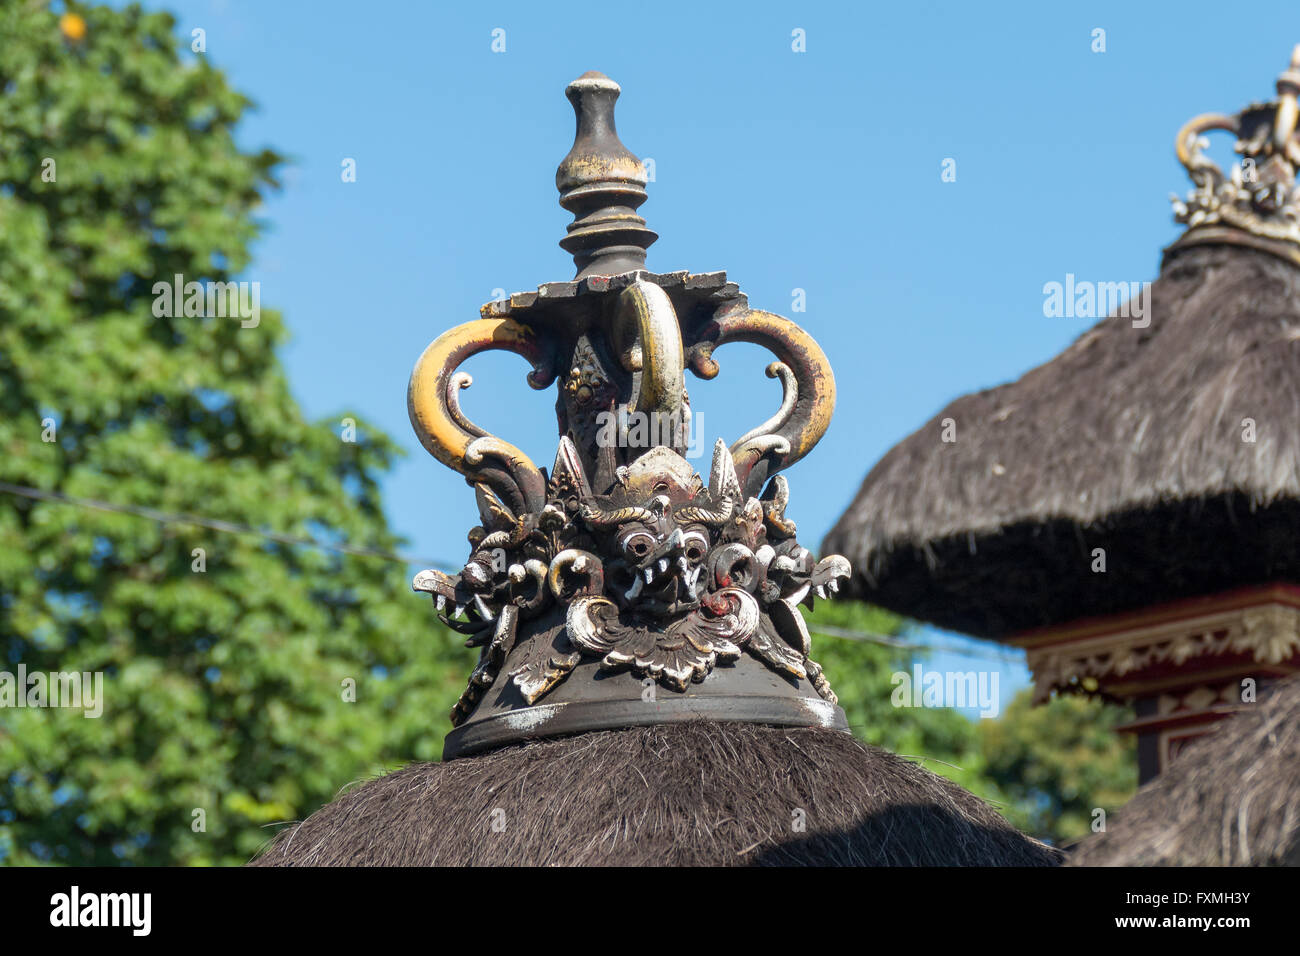 Traditional Balinese Roof Pinnacle, Ubud, Bali, Indonesia Stock Photo